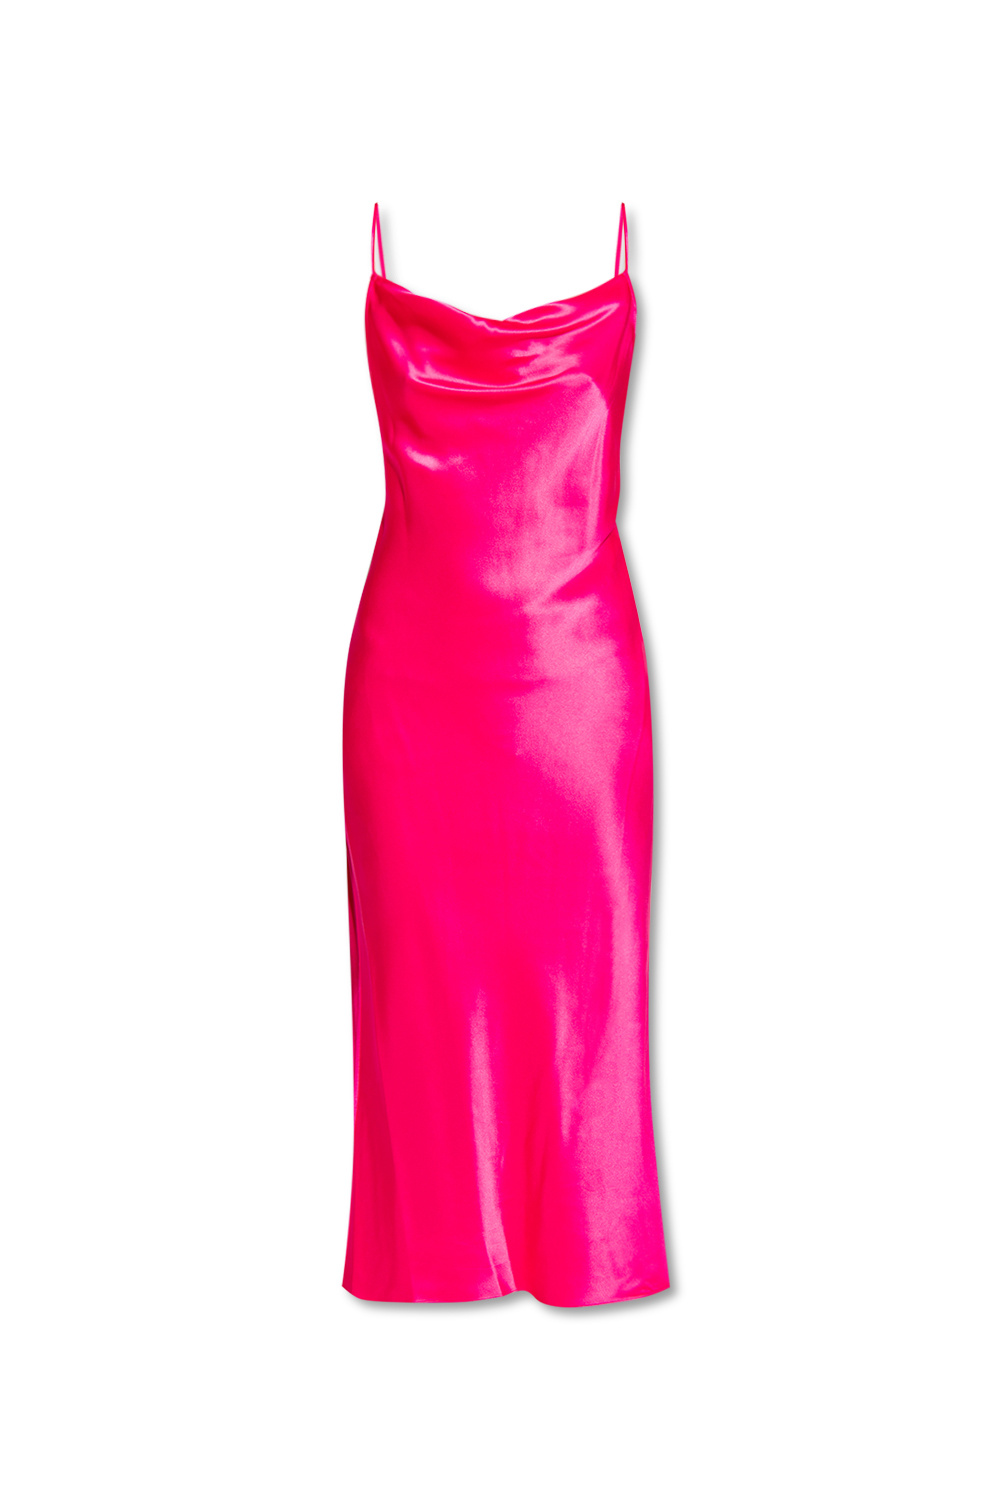 Diane Von Furstenberg ‘Brioni’ strap dress